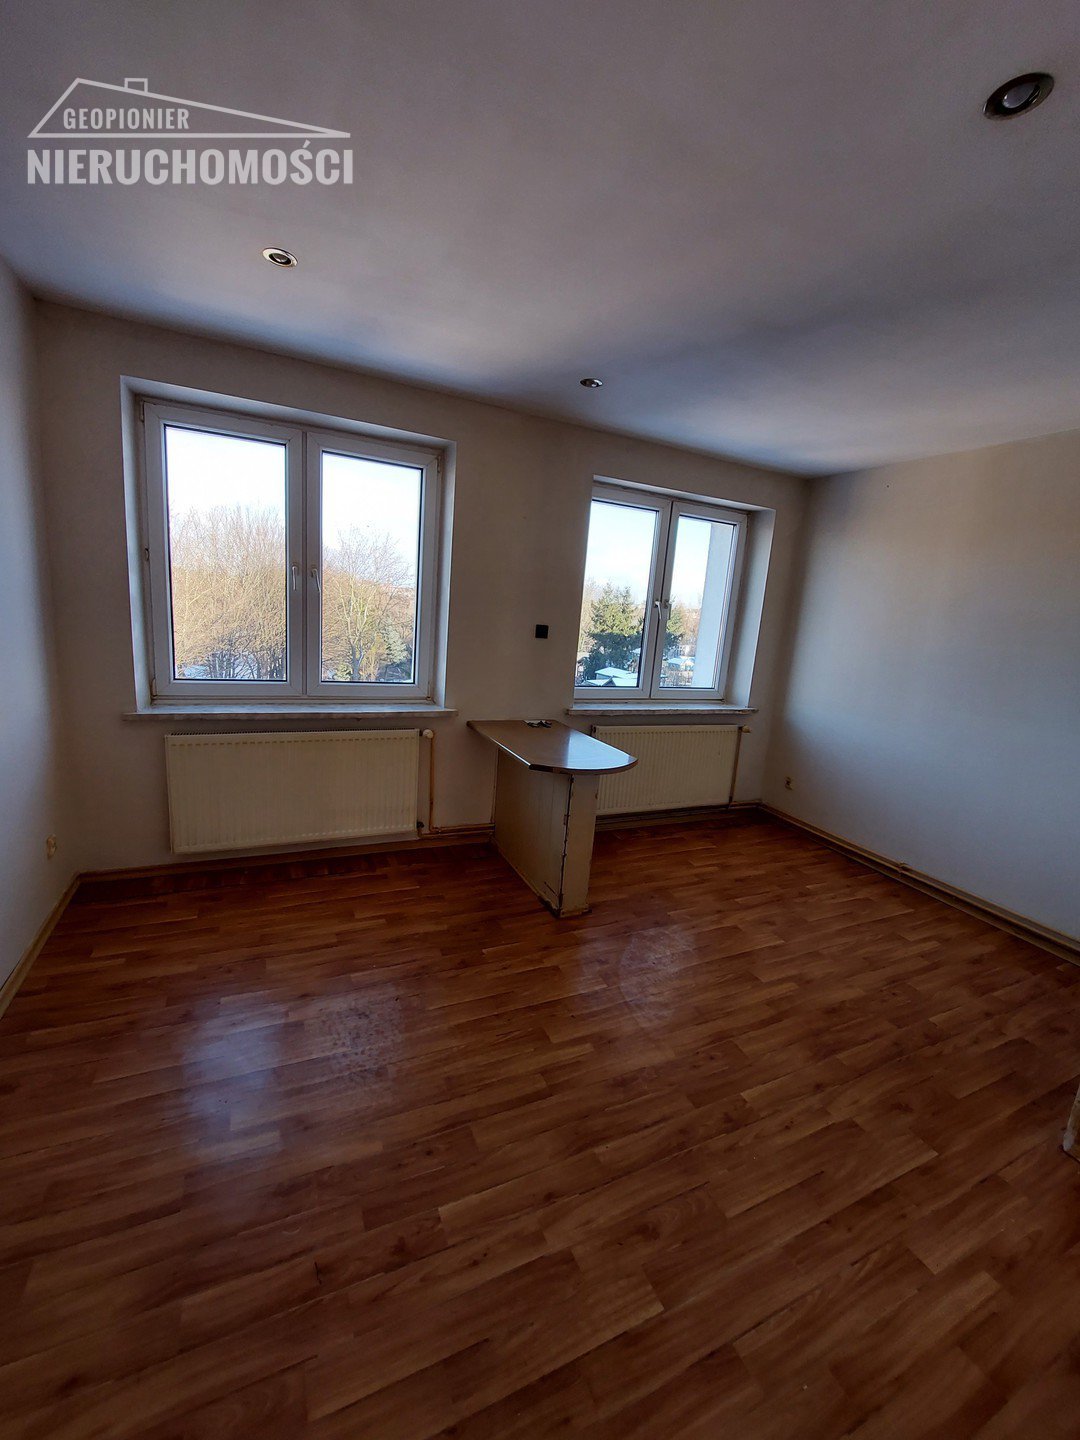 Mieszkanie dwupokojowe na sprzedaż Ostróda, ul. Stefana Jaracza  43m2 Foto 4